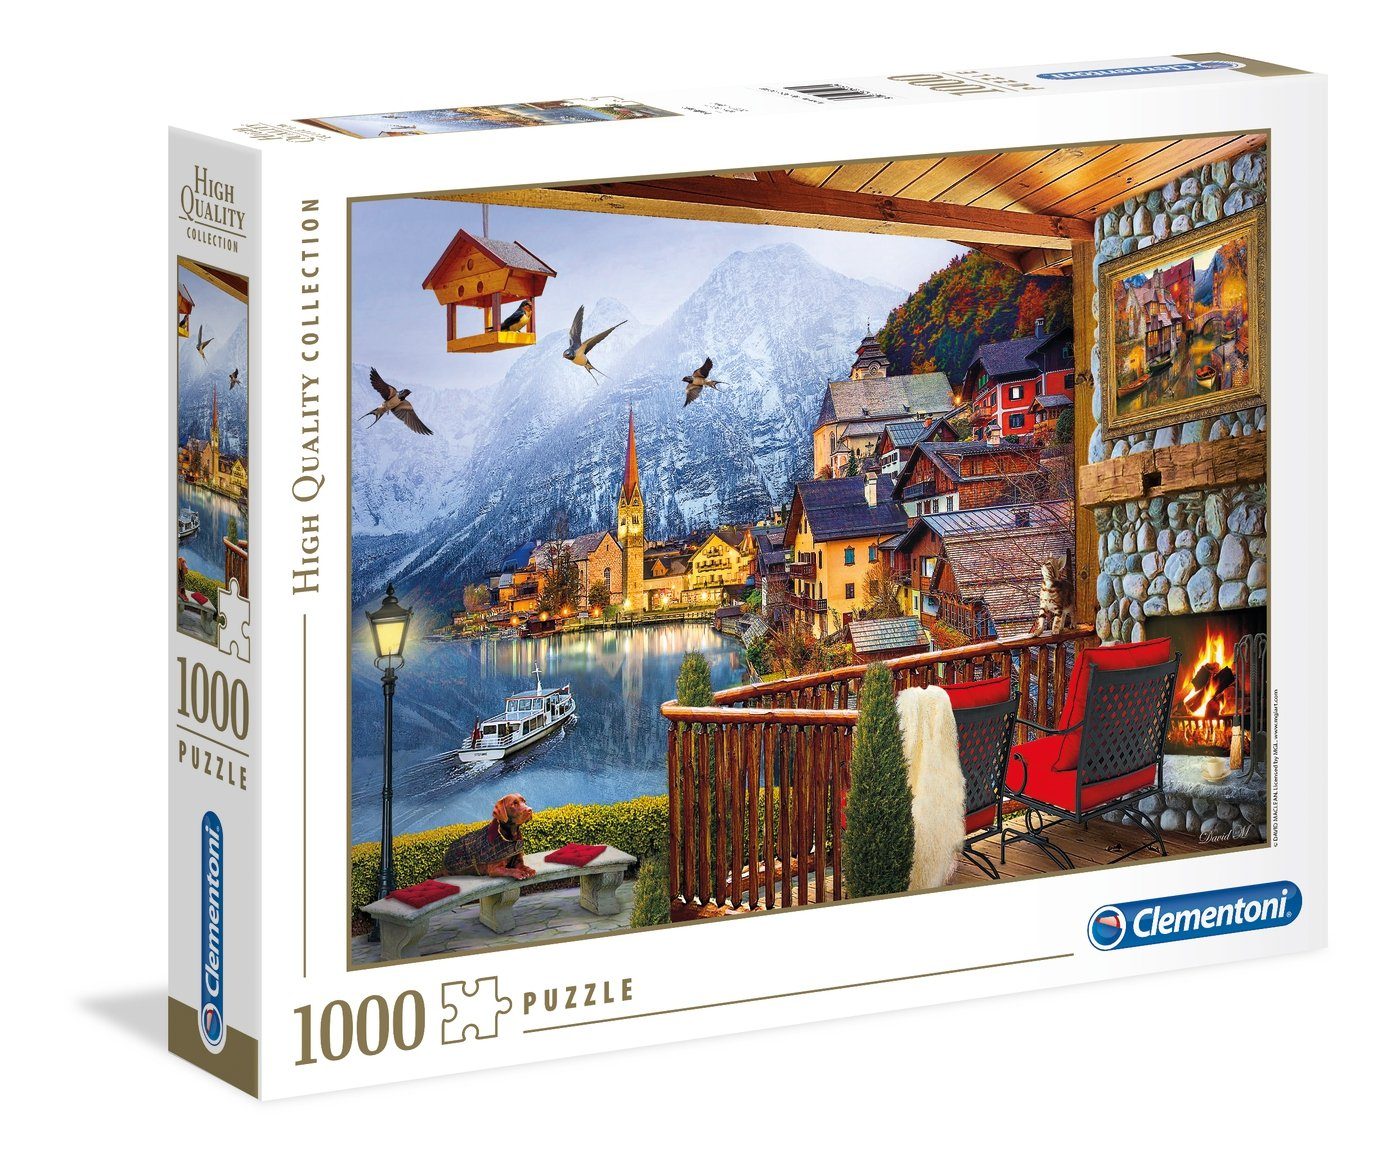 Clementoni® Puzzle Clementoni 39481 Hallstatt 1000 Teile Puzzle, 1000 Puzzleteile